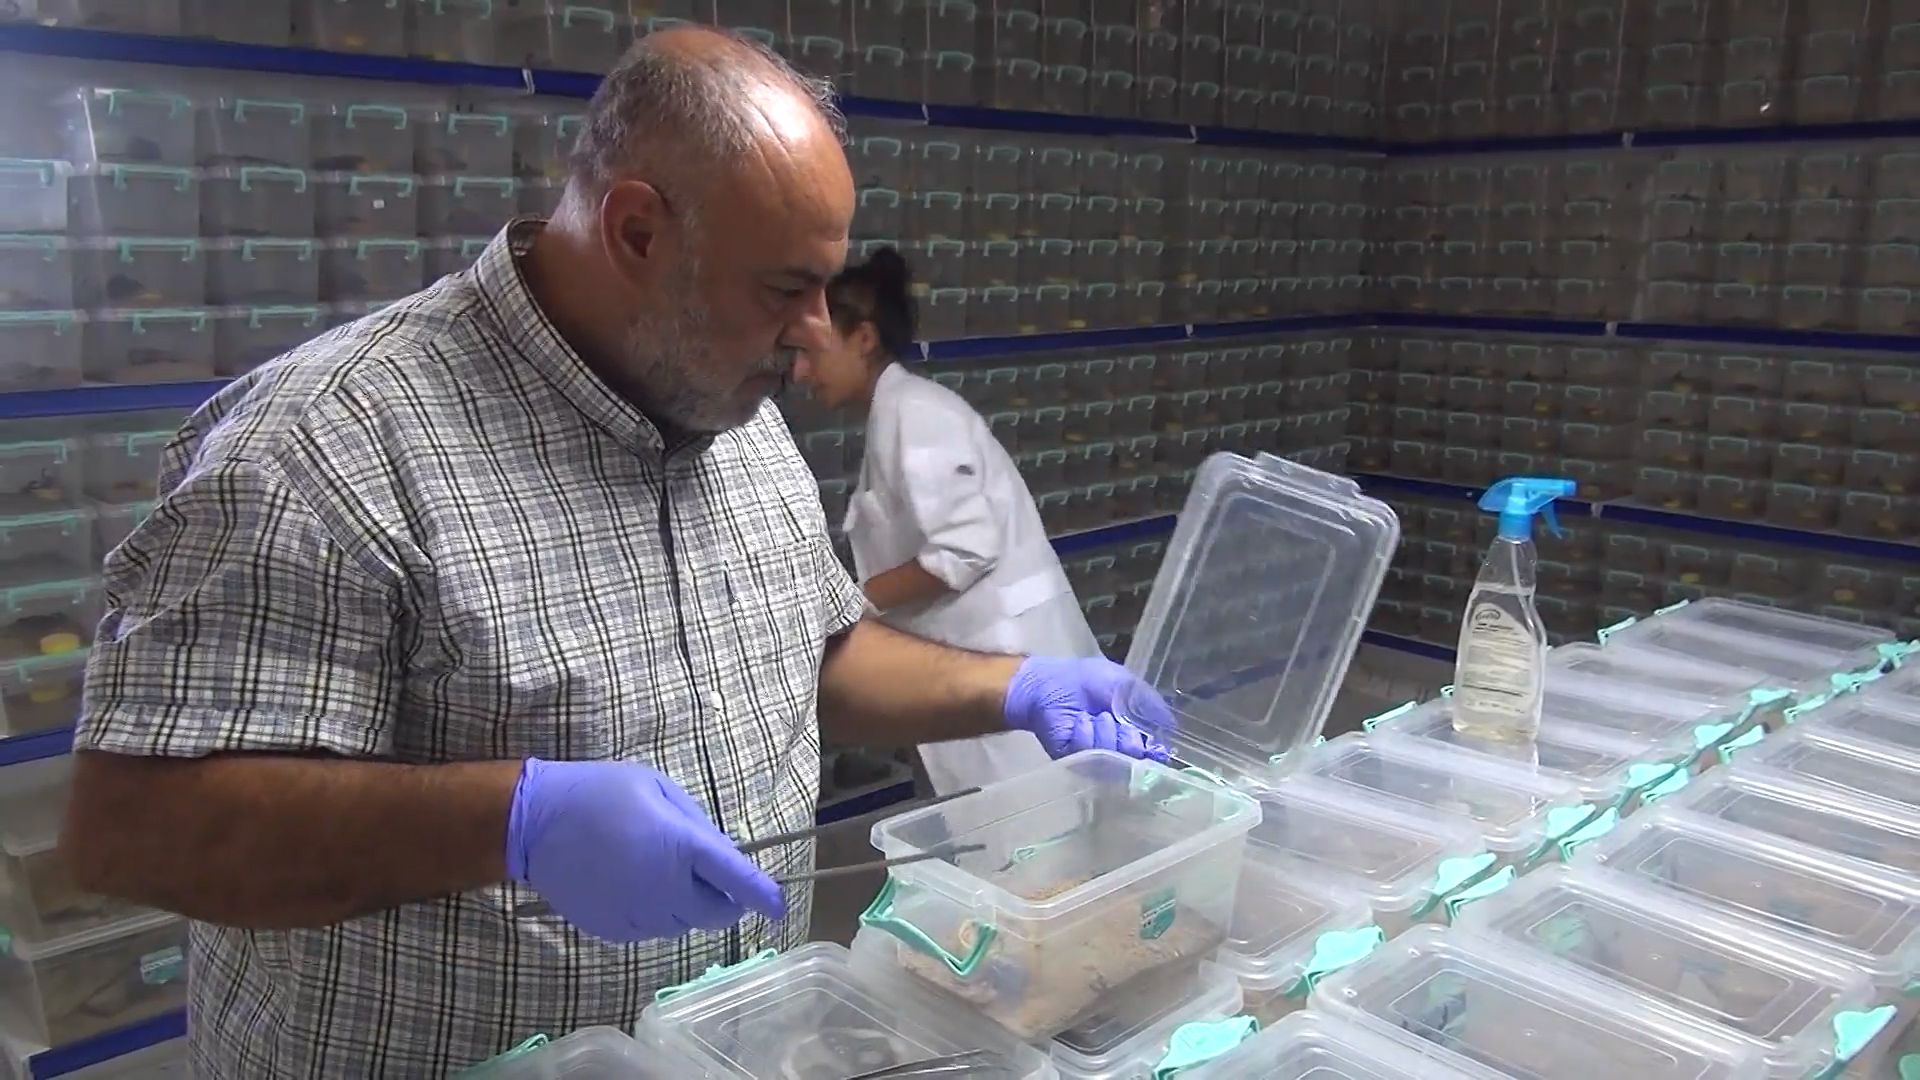 Ферма в Турции производит яд скорпионов Видео,Репортажи,ФАН-ТВ